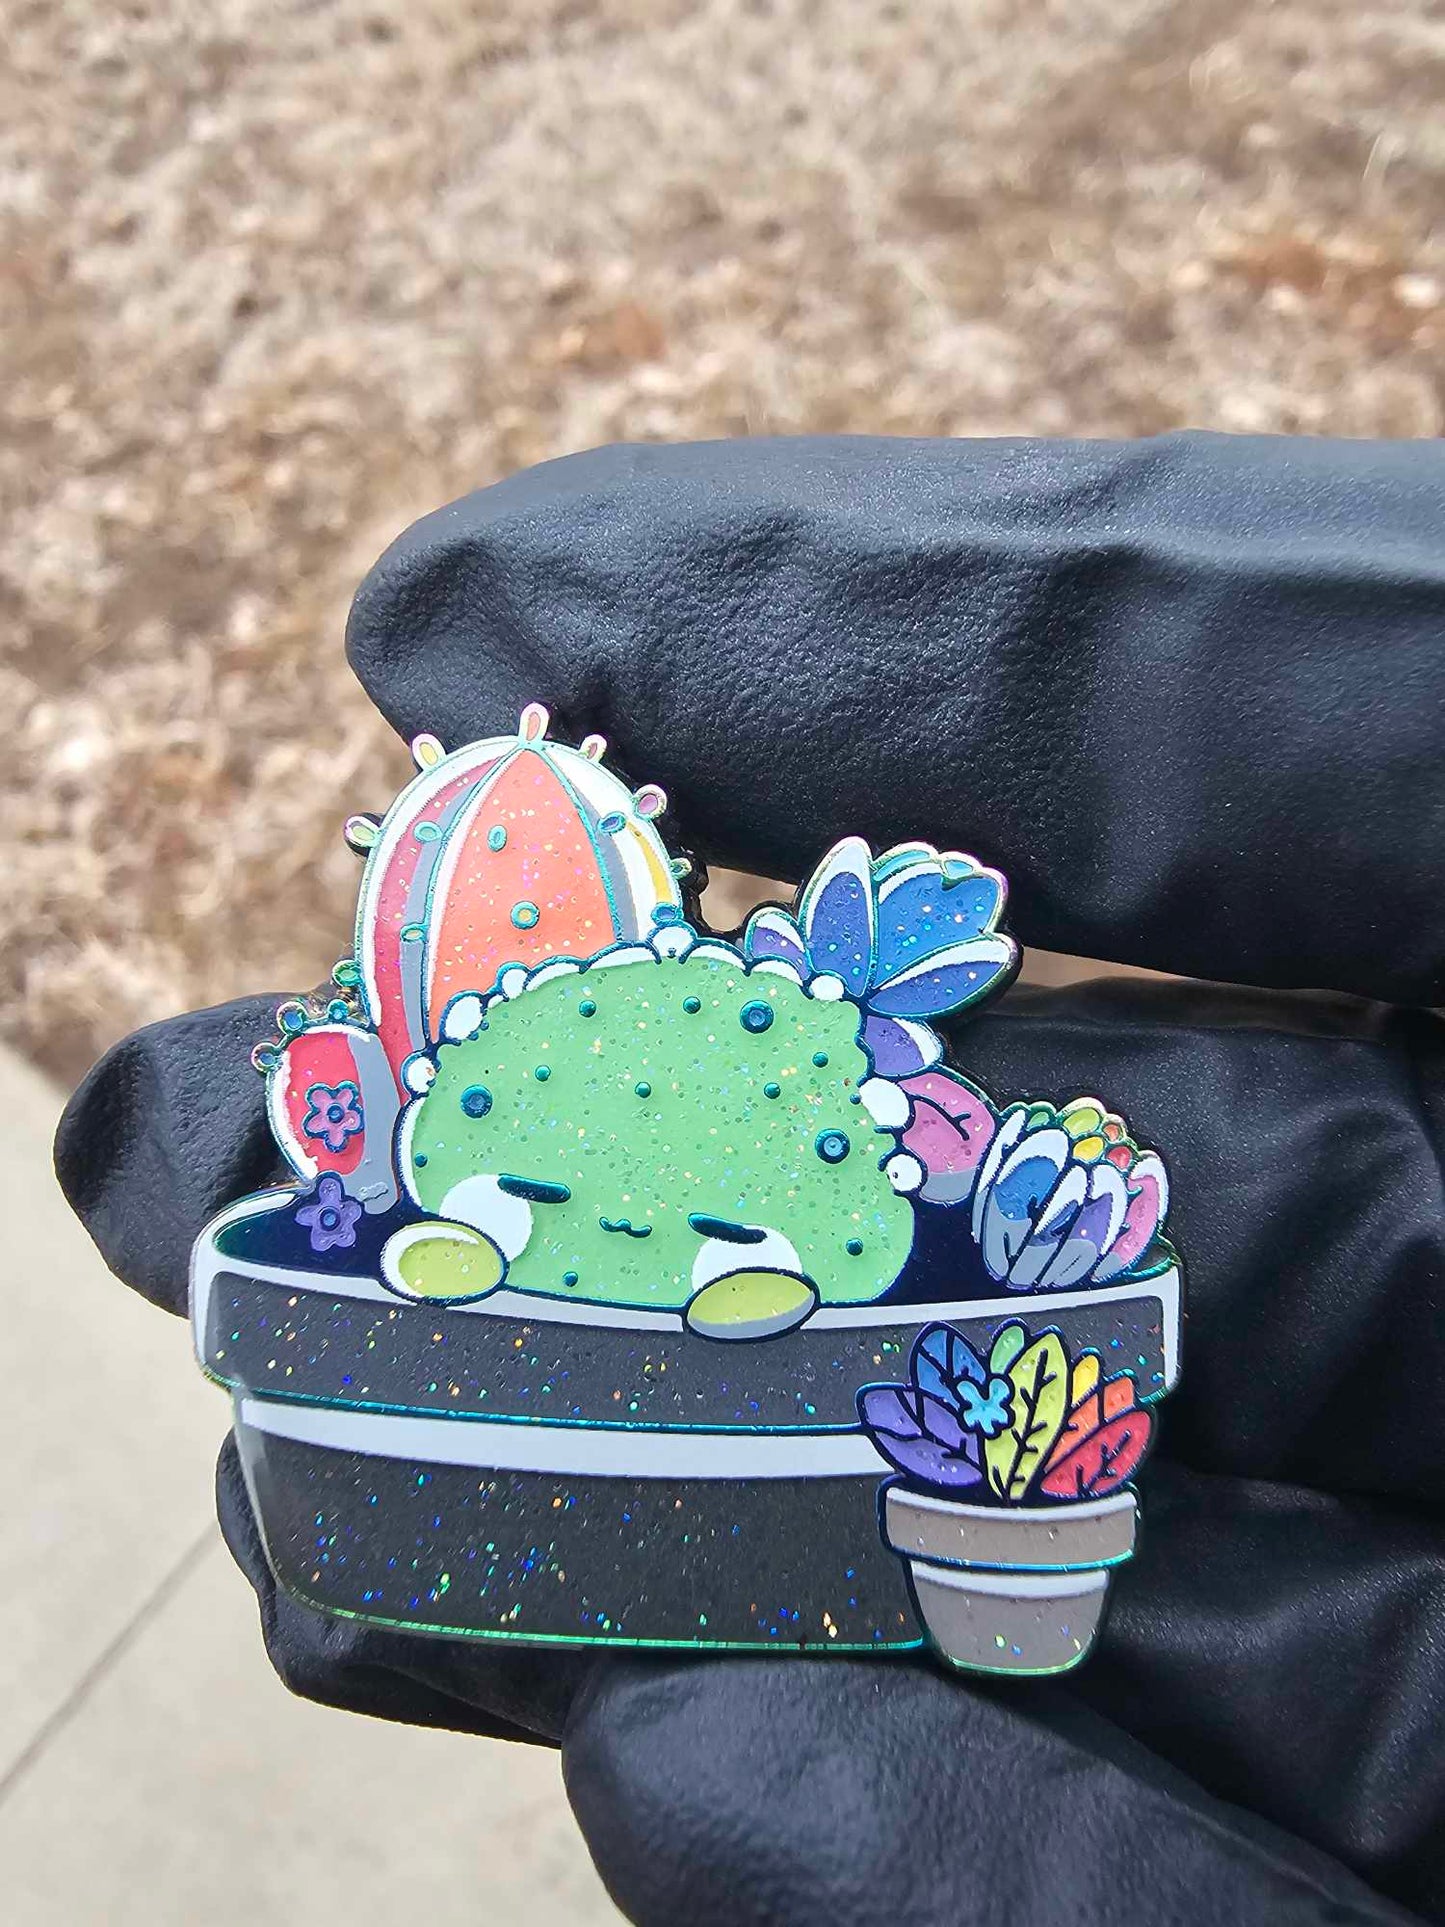 Cactus Cutie - Full Set (5 Total Pins)